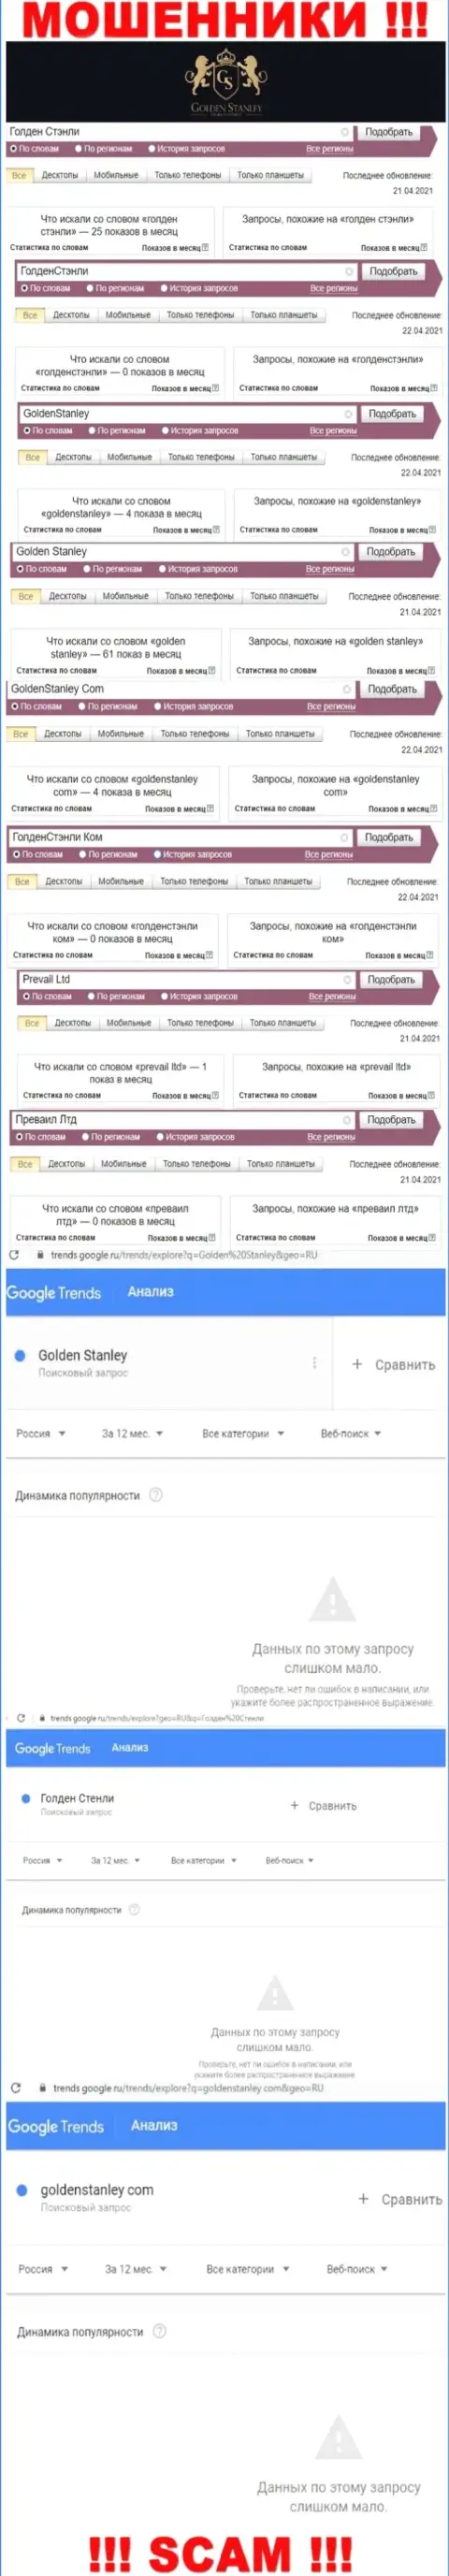 Статистические данные internet запросов в поисковиках глобальной сети относительно мошенников GoldenStanley Com